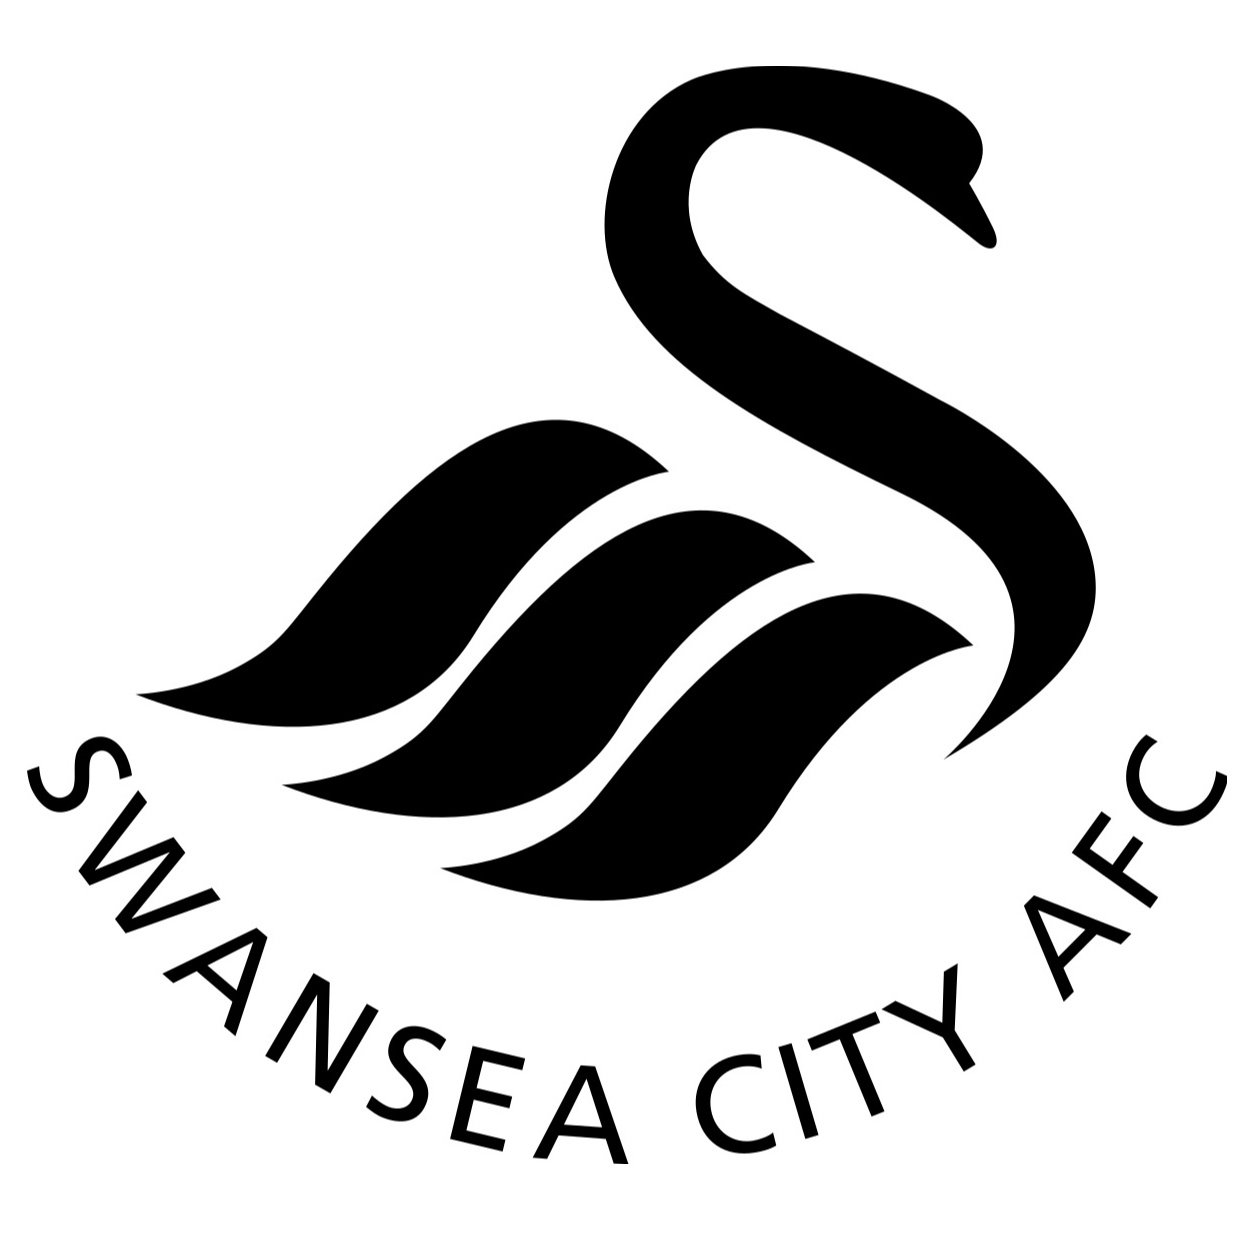 Escudo del Swansea City Sub 21